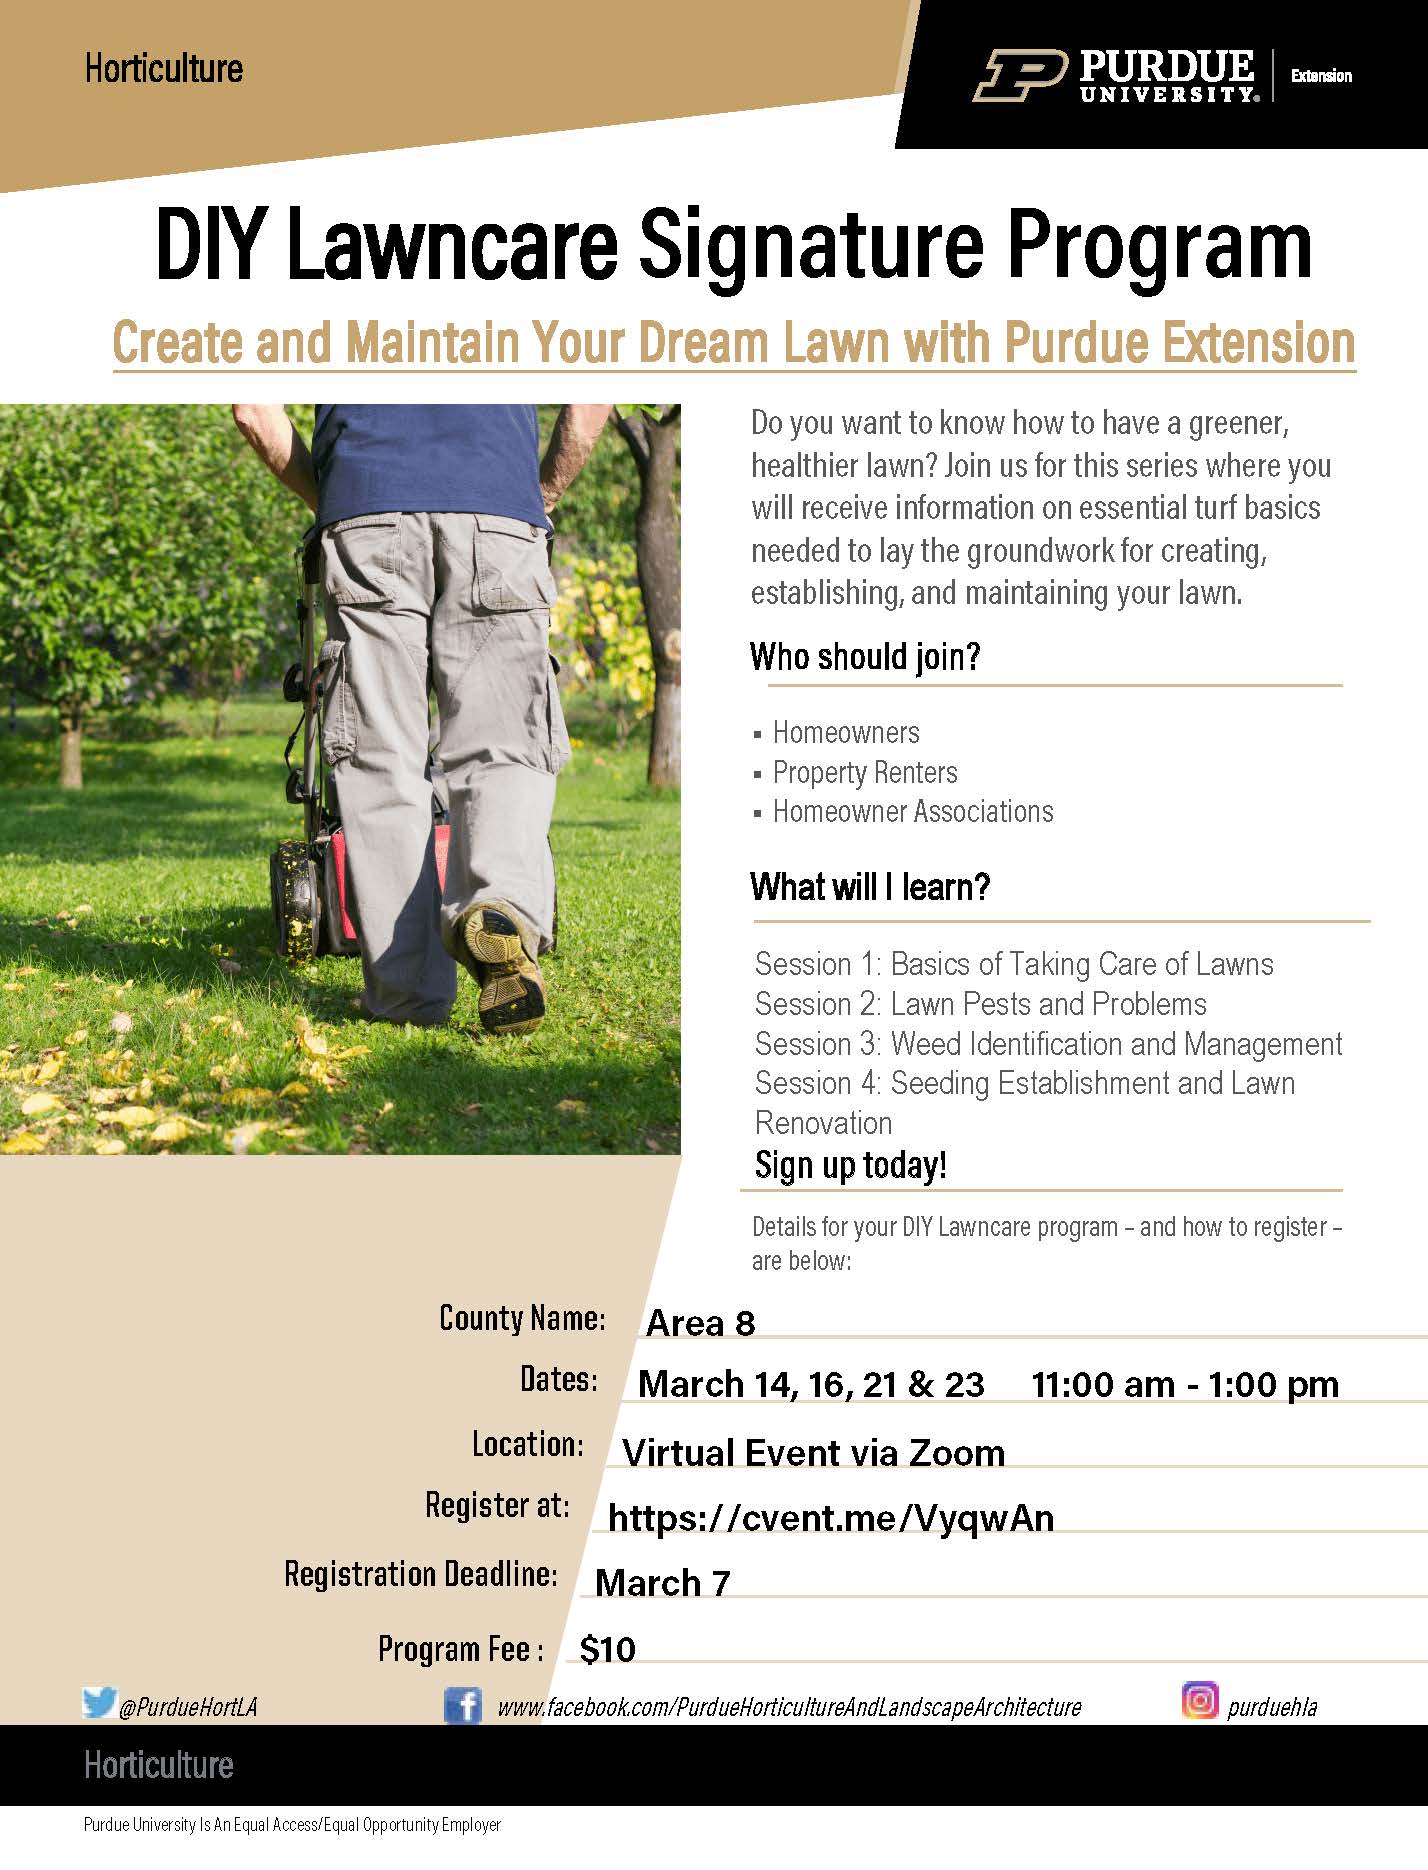 area-8---diy-lawncare-signature-program-flyer.jpg